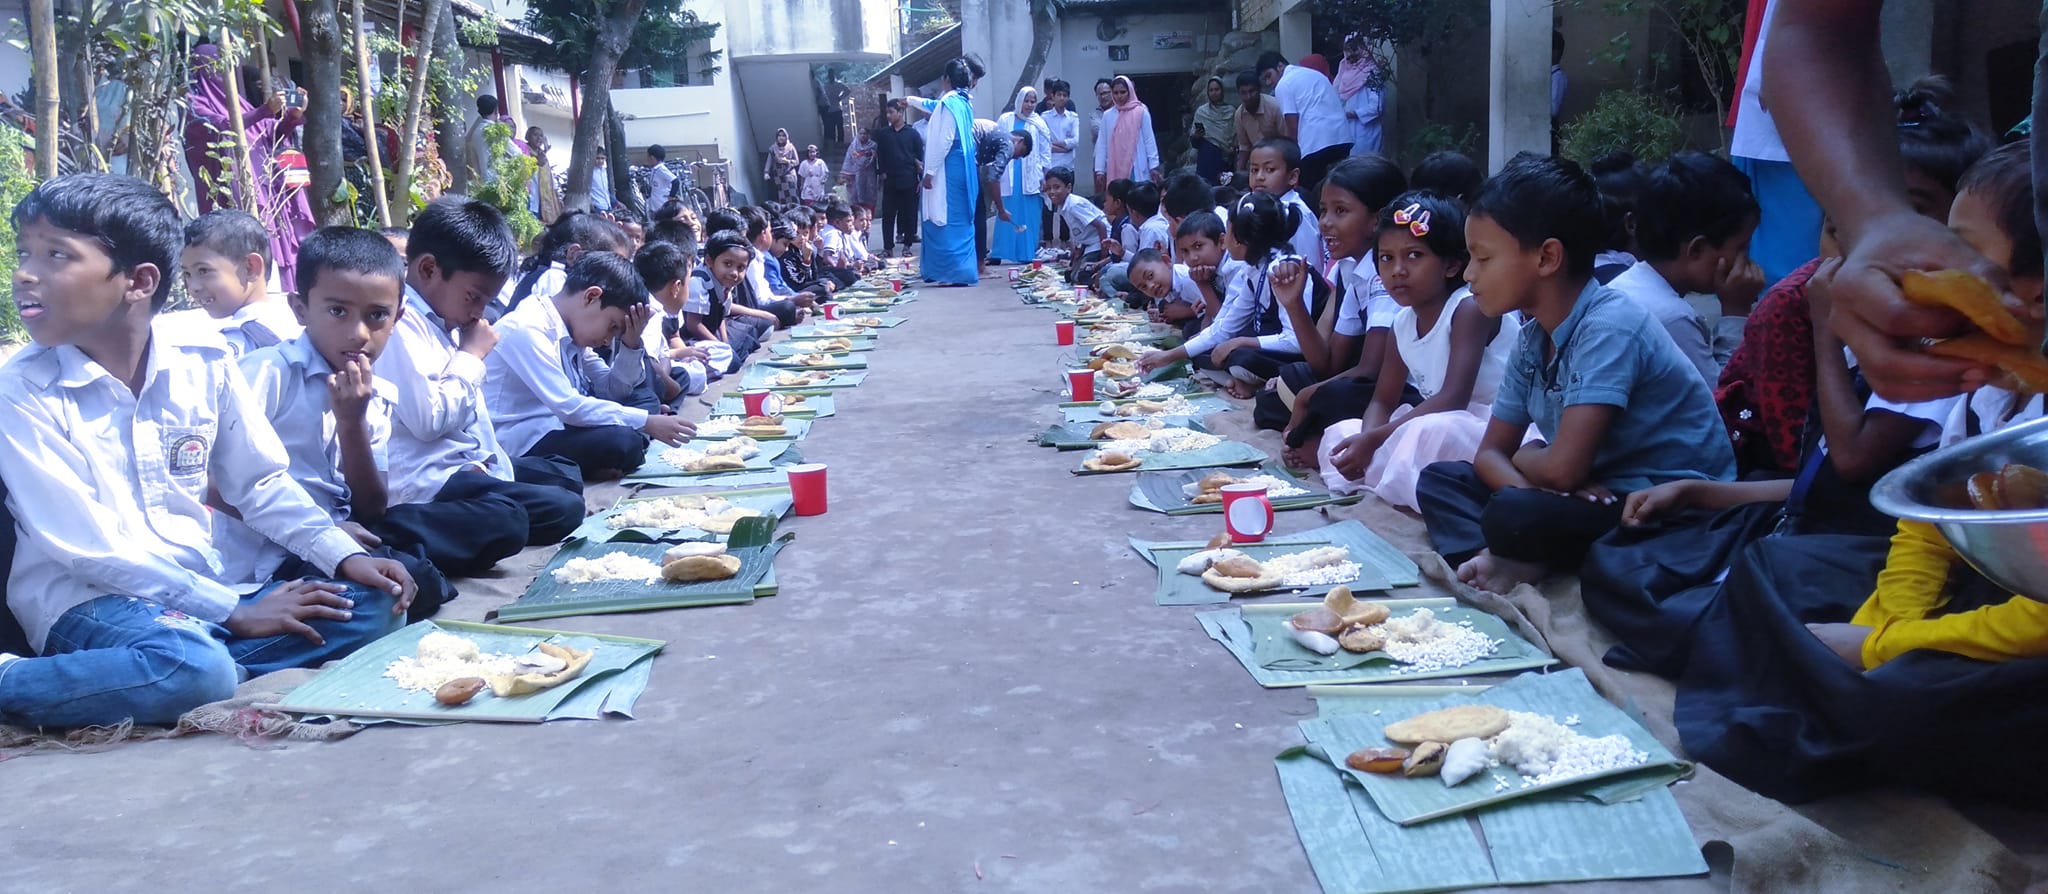 পলাশবাড়ীর ঐতিহ্যবাহী শিক্ষাপ্রতিষ্ঠান হোপ ইন্টারন্যাশনাল স্কুলে নবান্ন উৎসব পালিত -